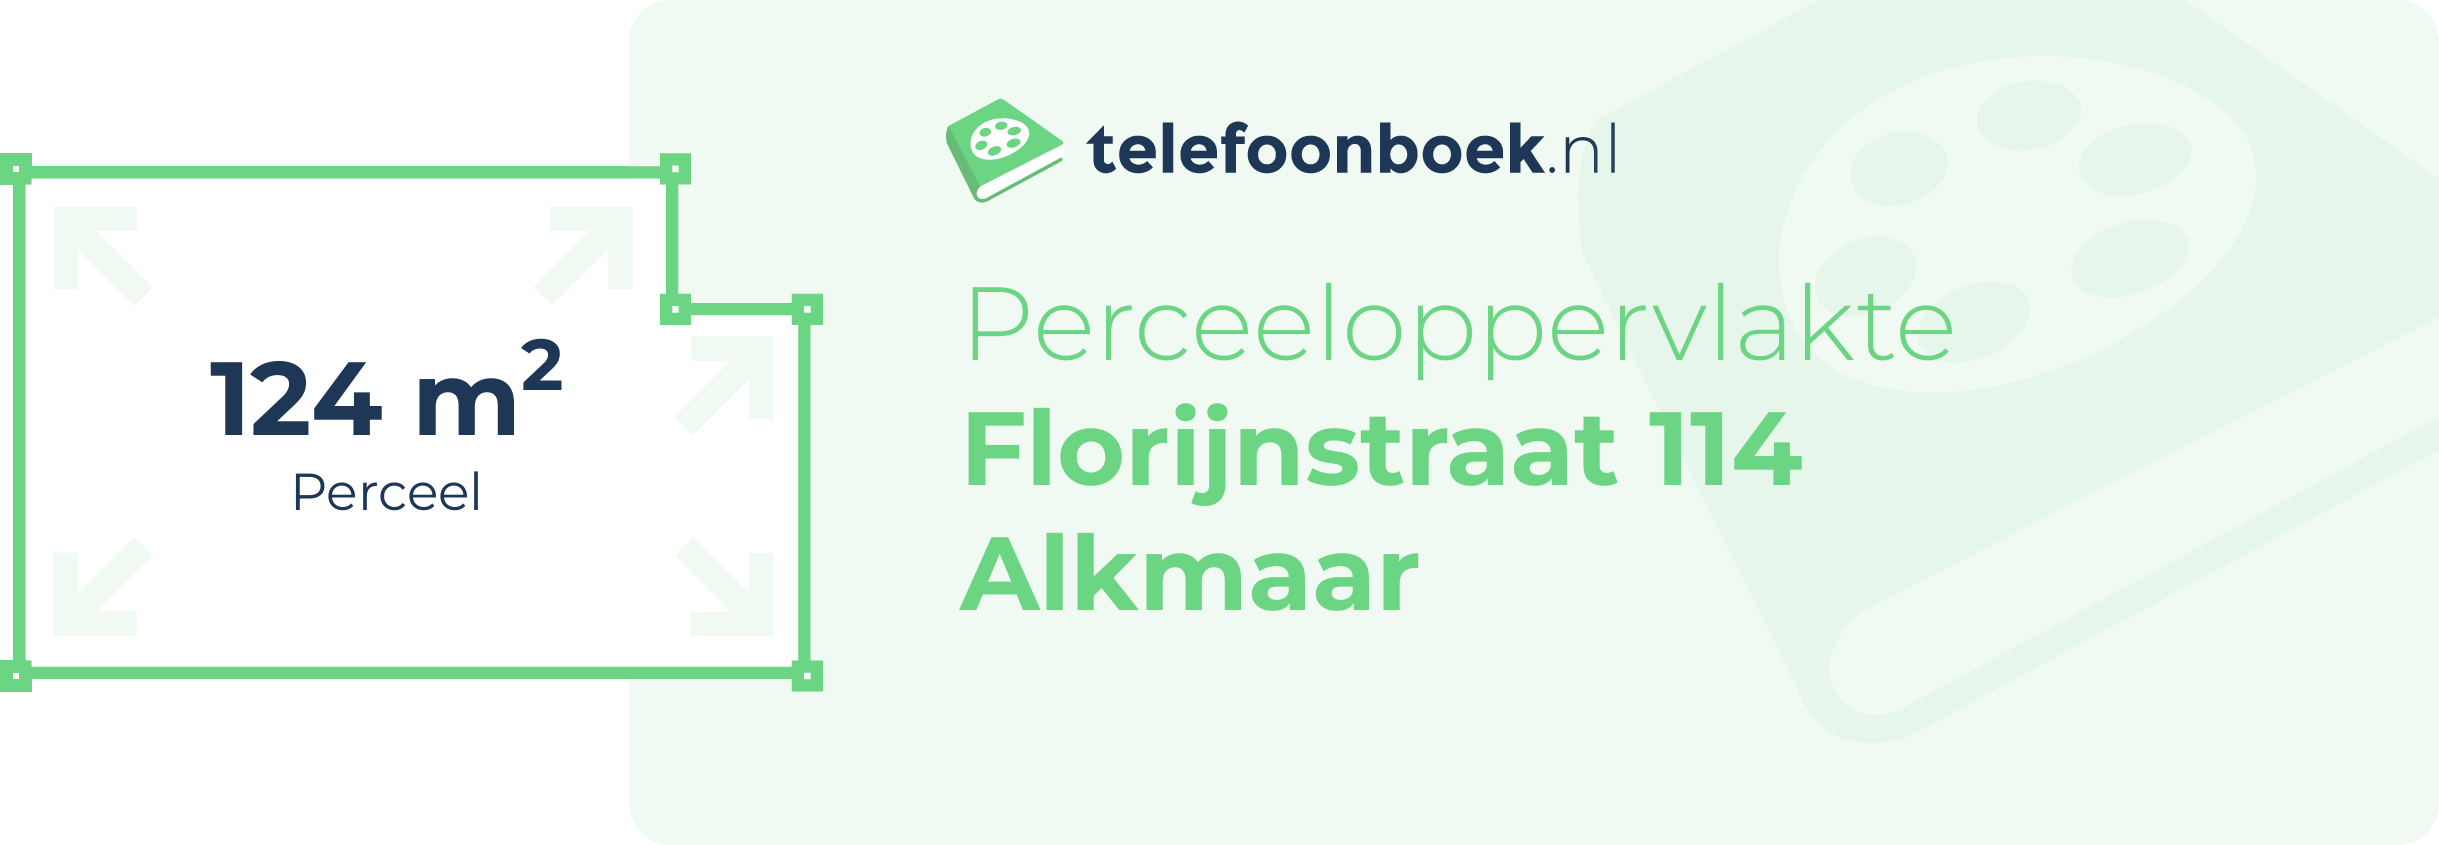 Perceeloppervlakte Florijnstraat 114 Alkmaar